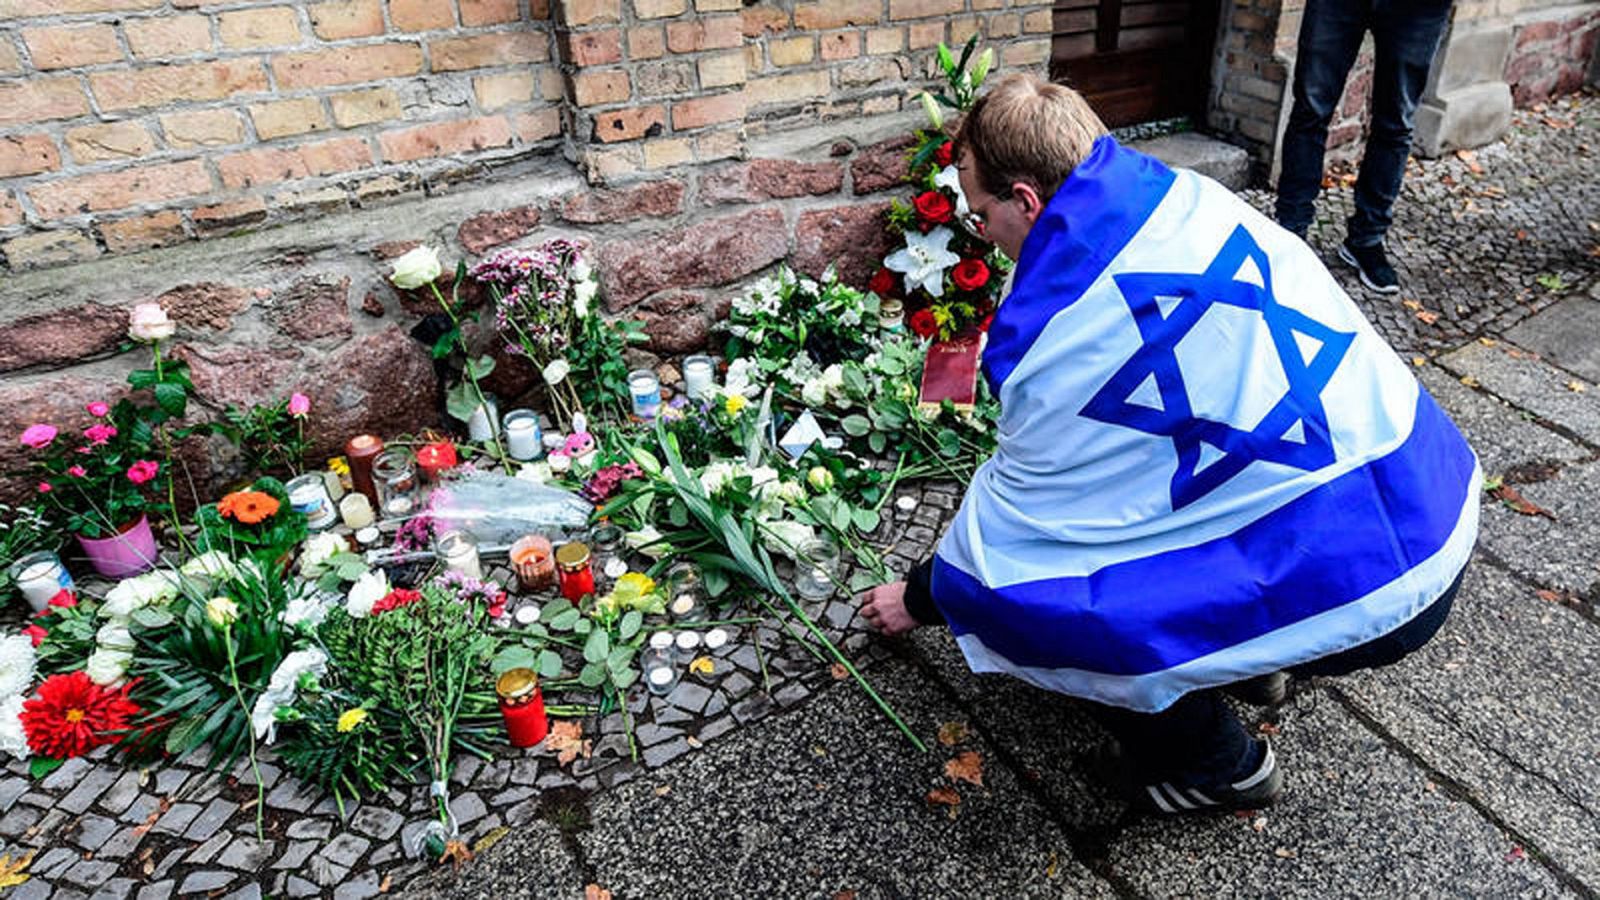 El autor del atentado ultraderechista de Alemania trató de cometer una "masacre" en la sinagoga, según la fiscalía